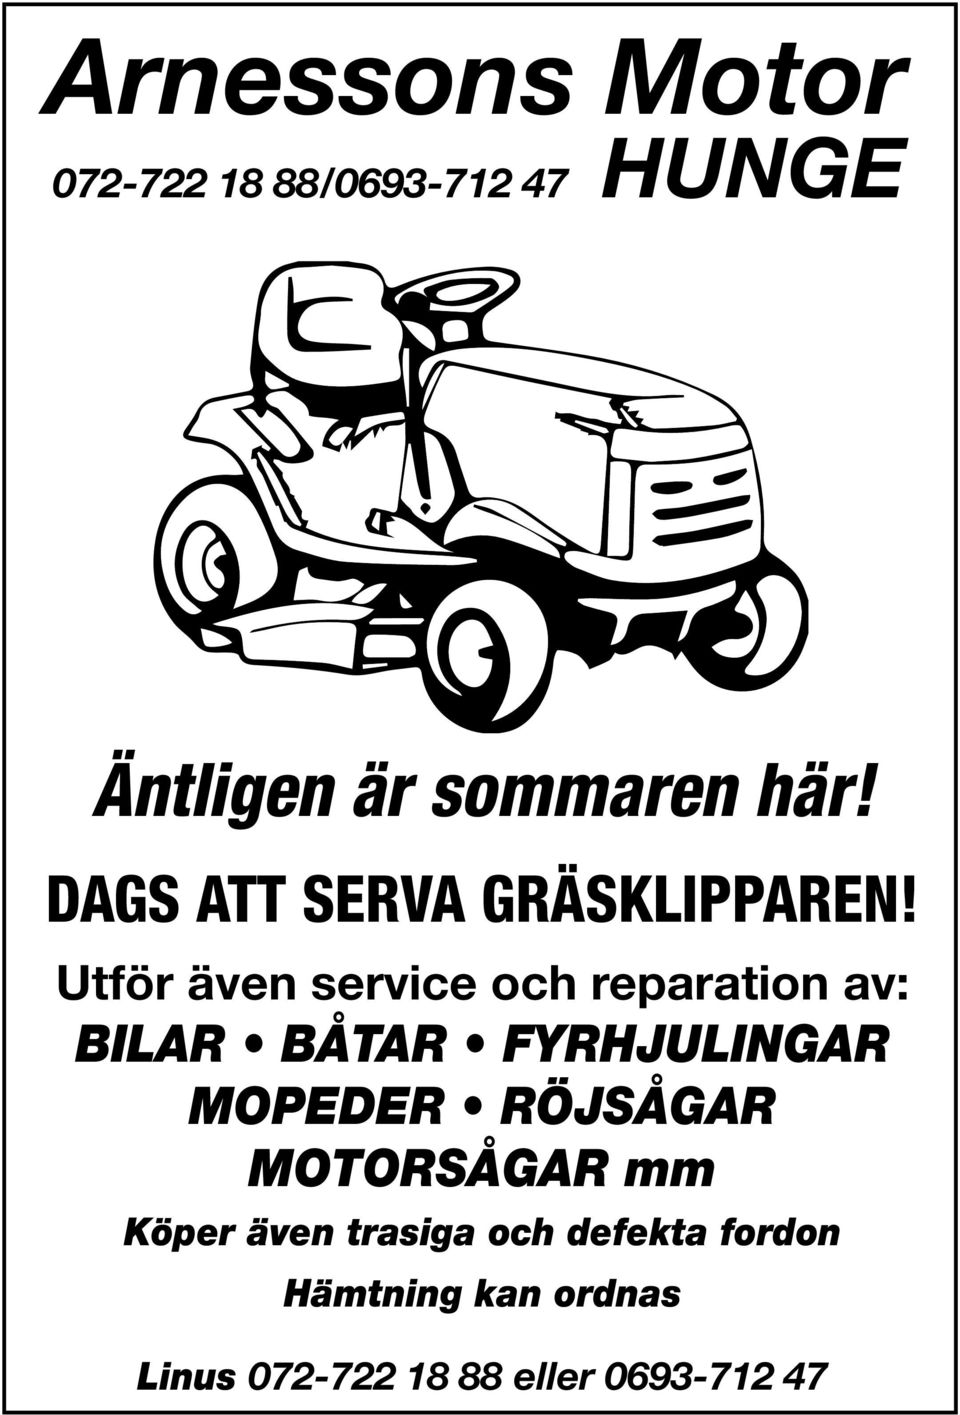 Utför även service och reparation av: BILAR BÅTAR FYRHJULINGAR MOPEDER